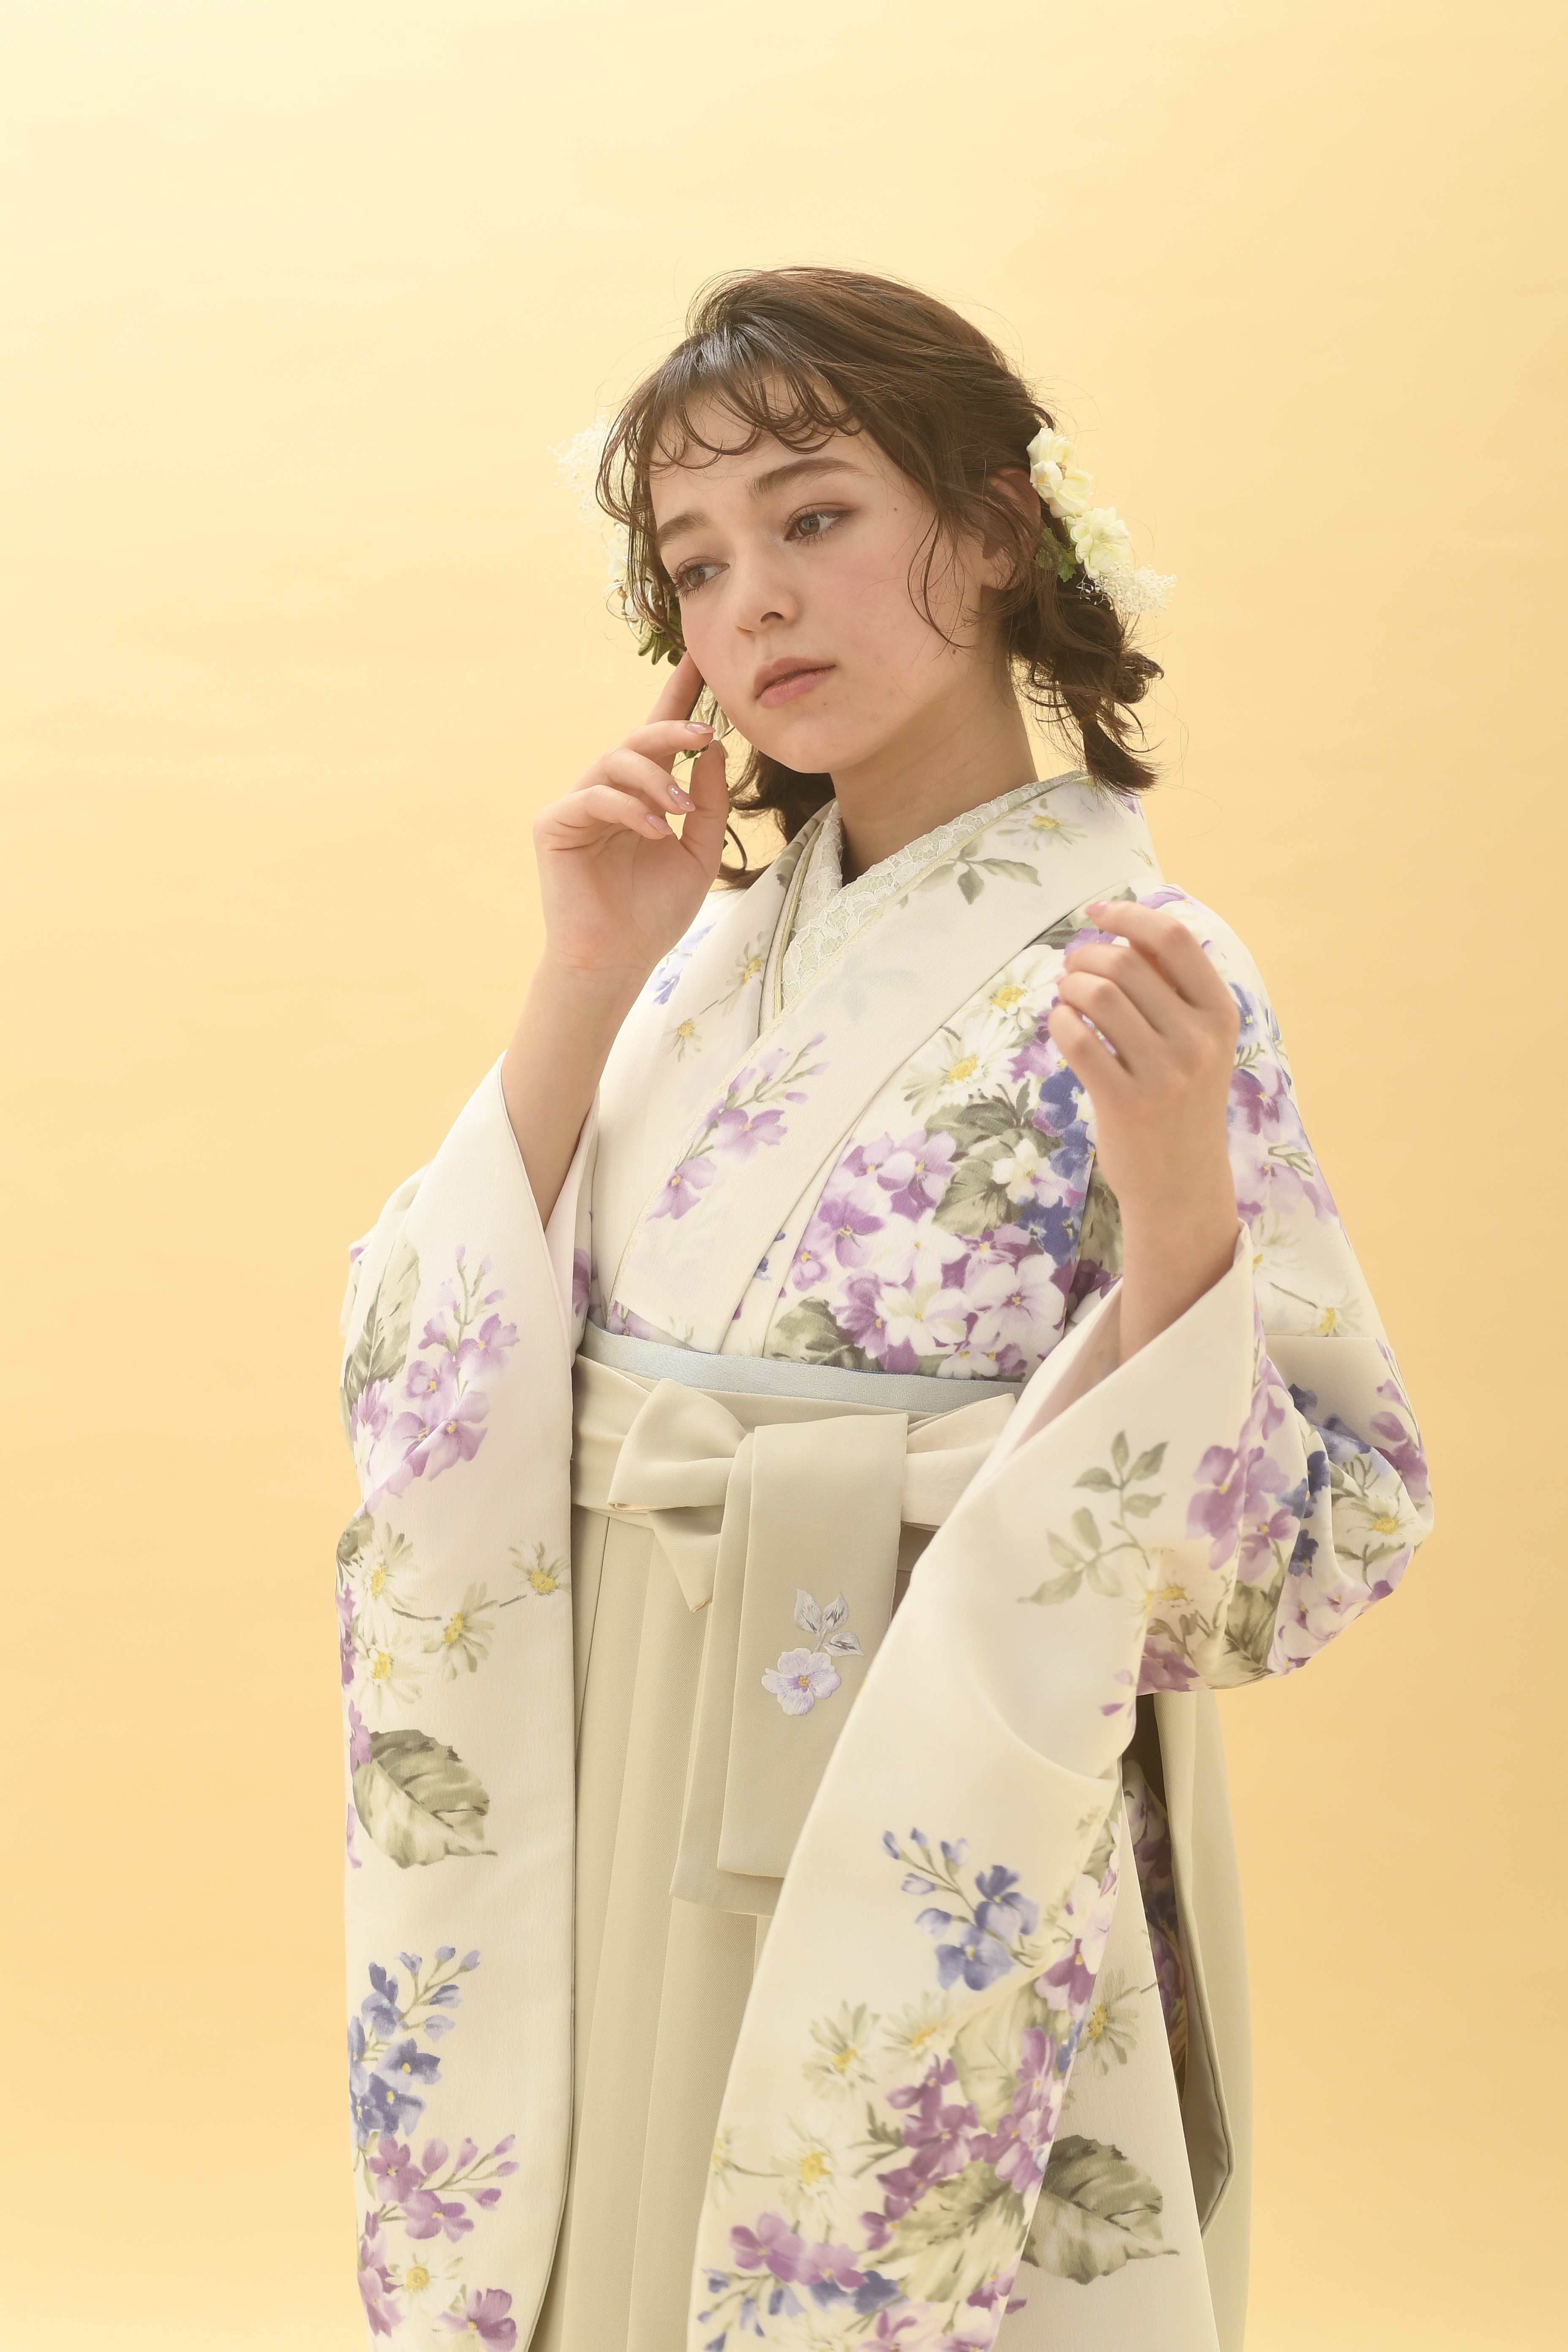 シュガーKブランドの、クリーム地に小花柄の二尺袖と、クリーム色の袴の女性用卒業式袴を着用したアップ写真